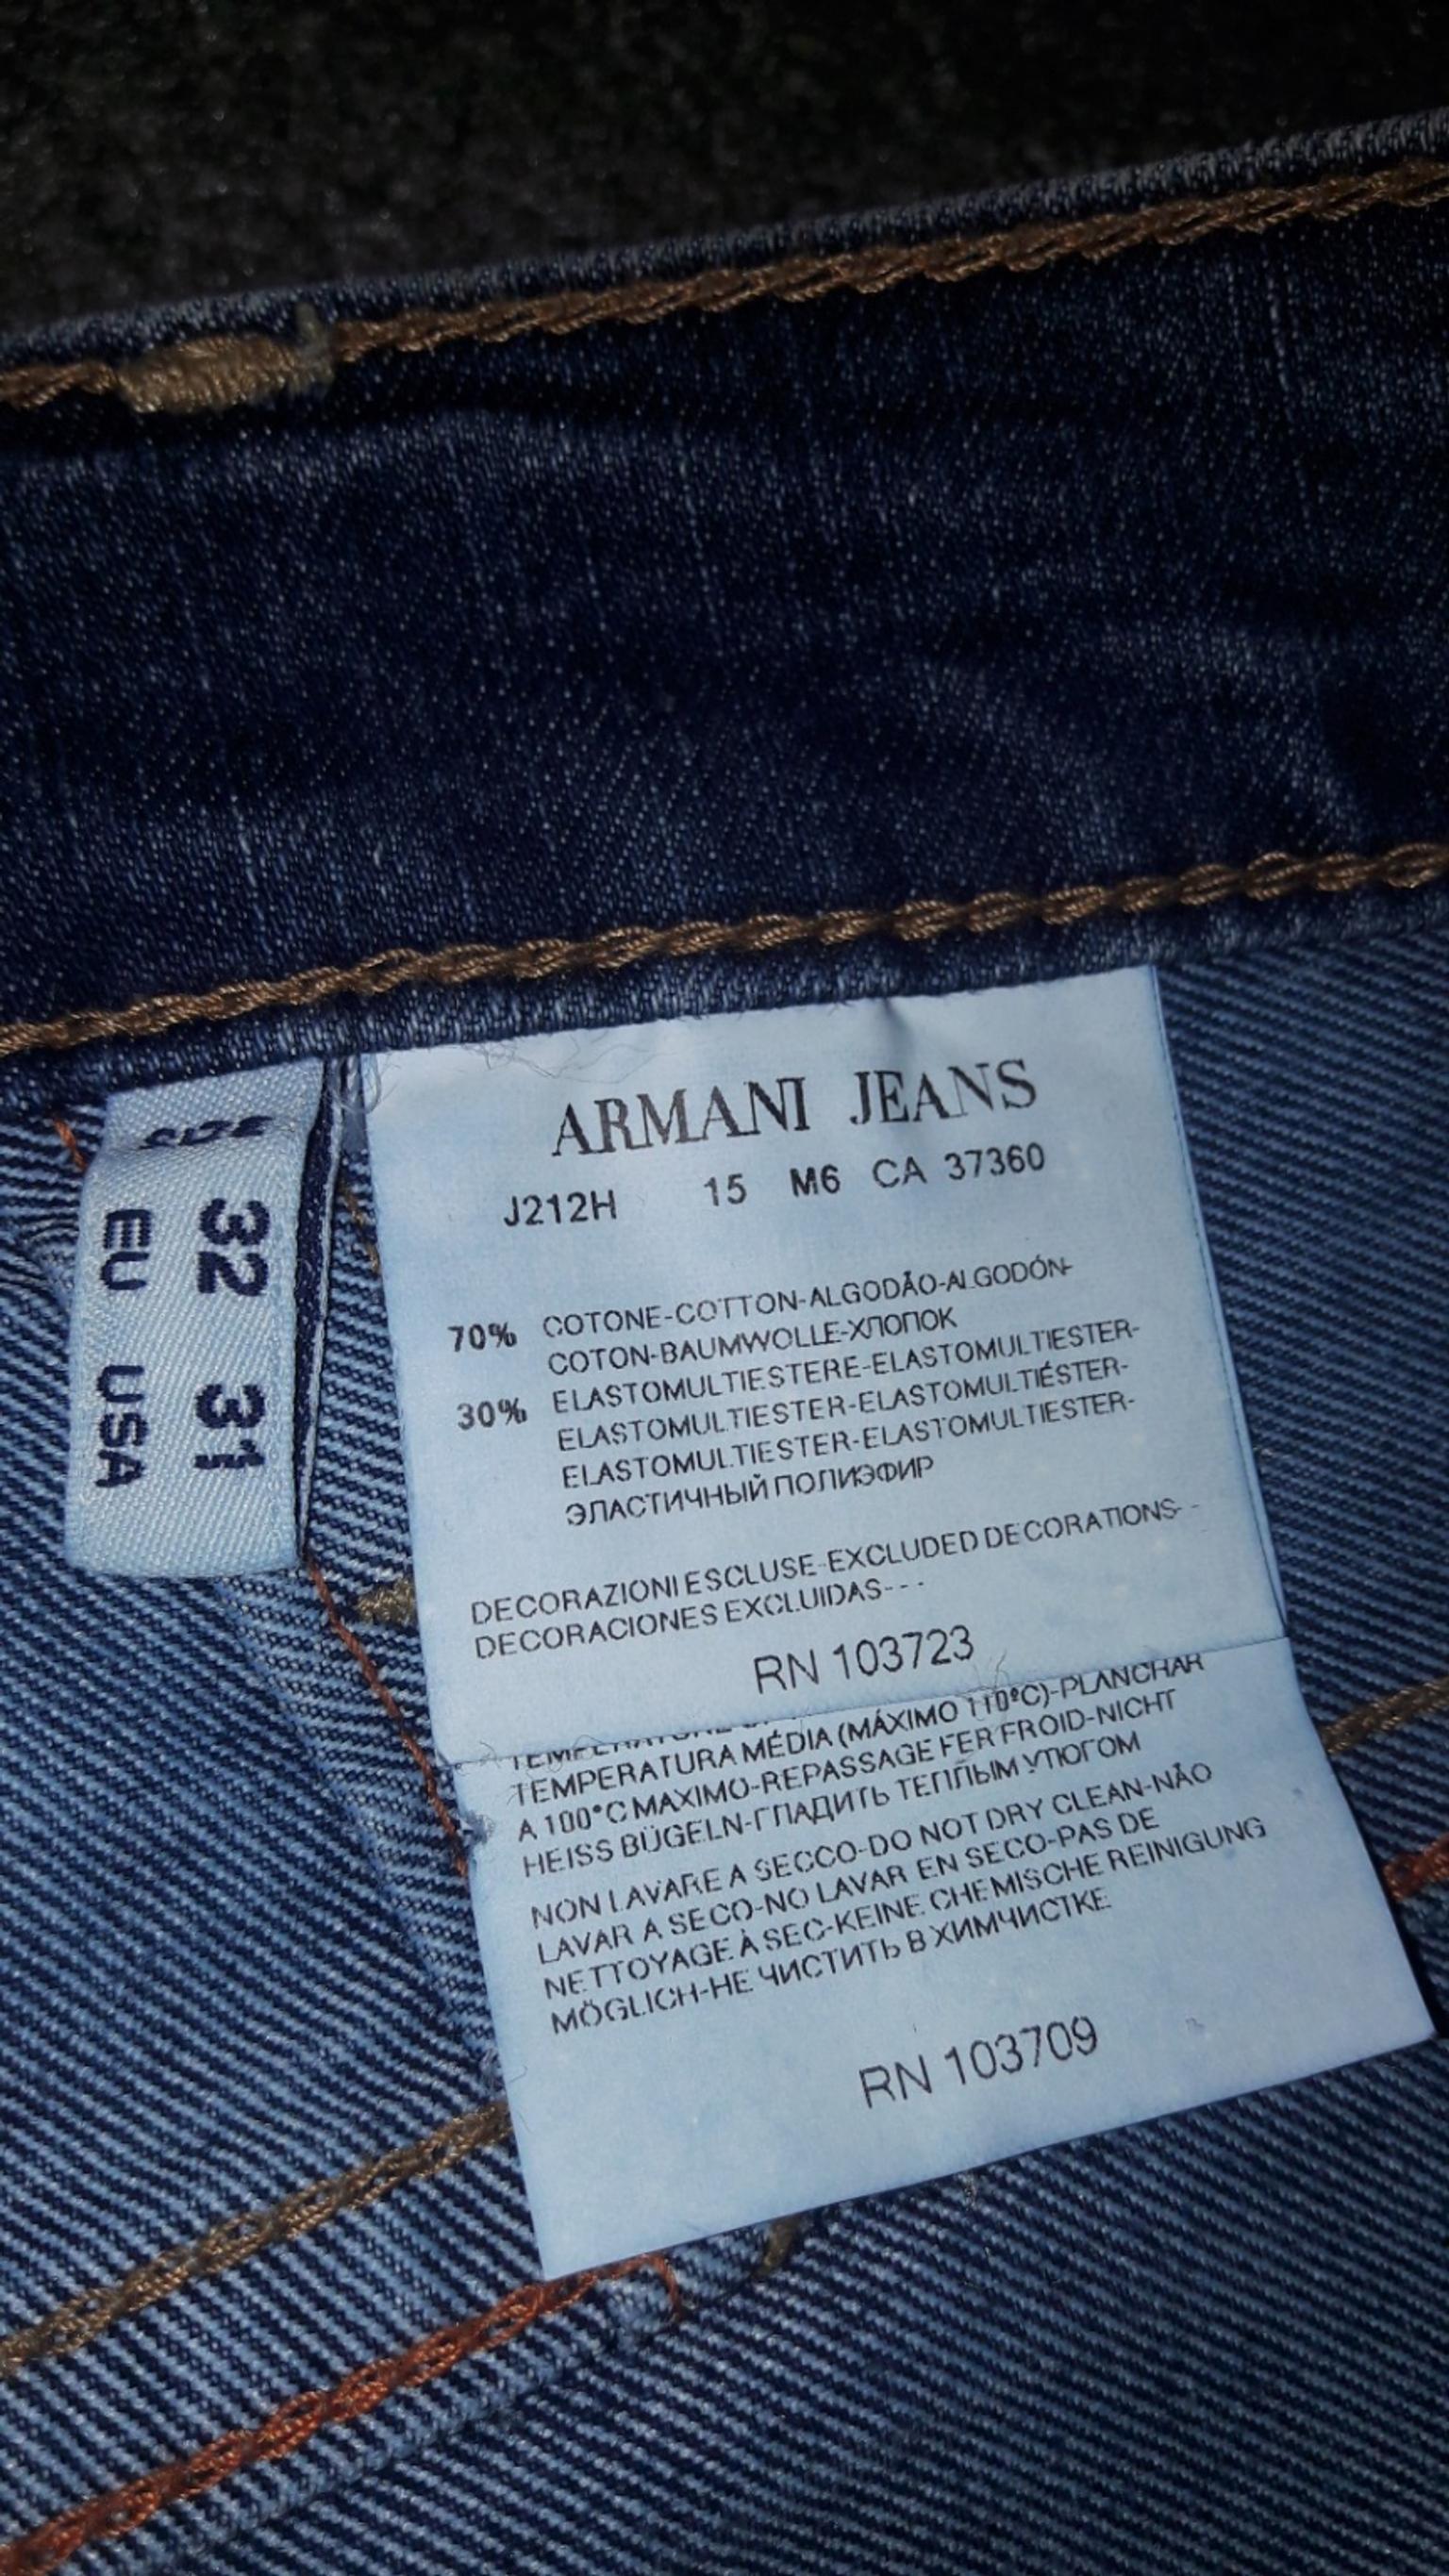 armani jeans rn103723